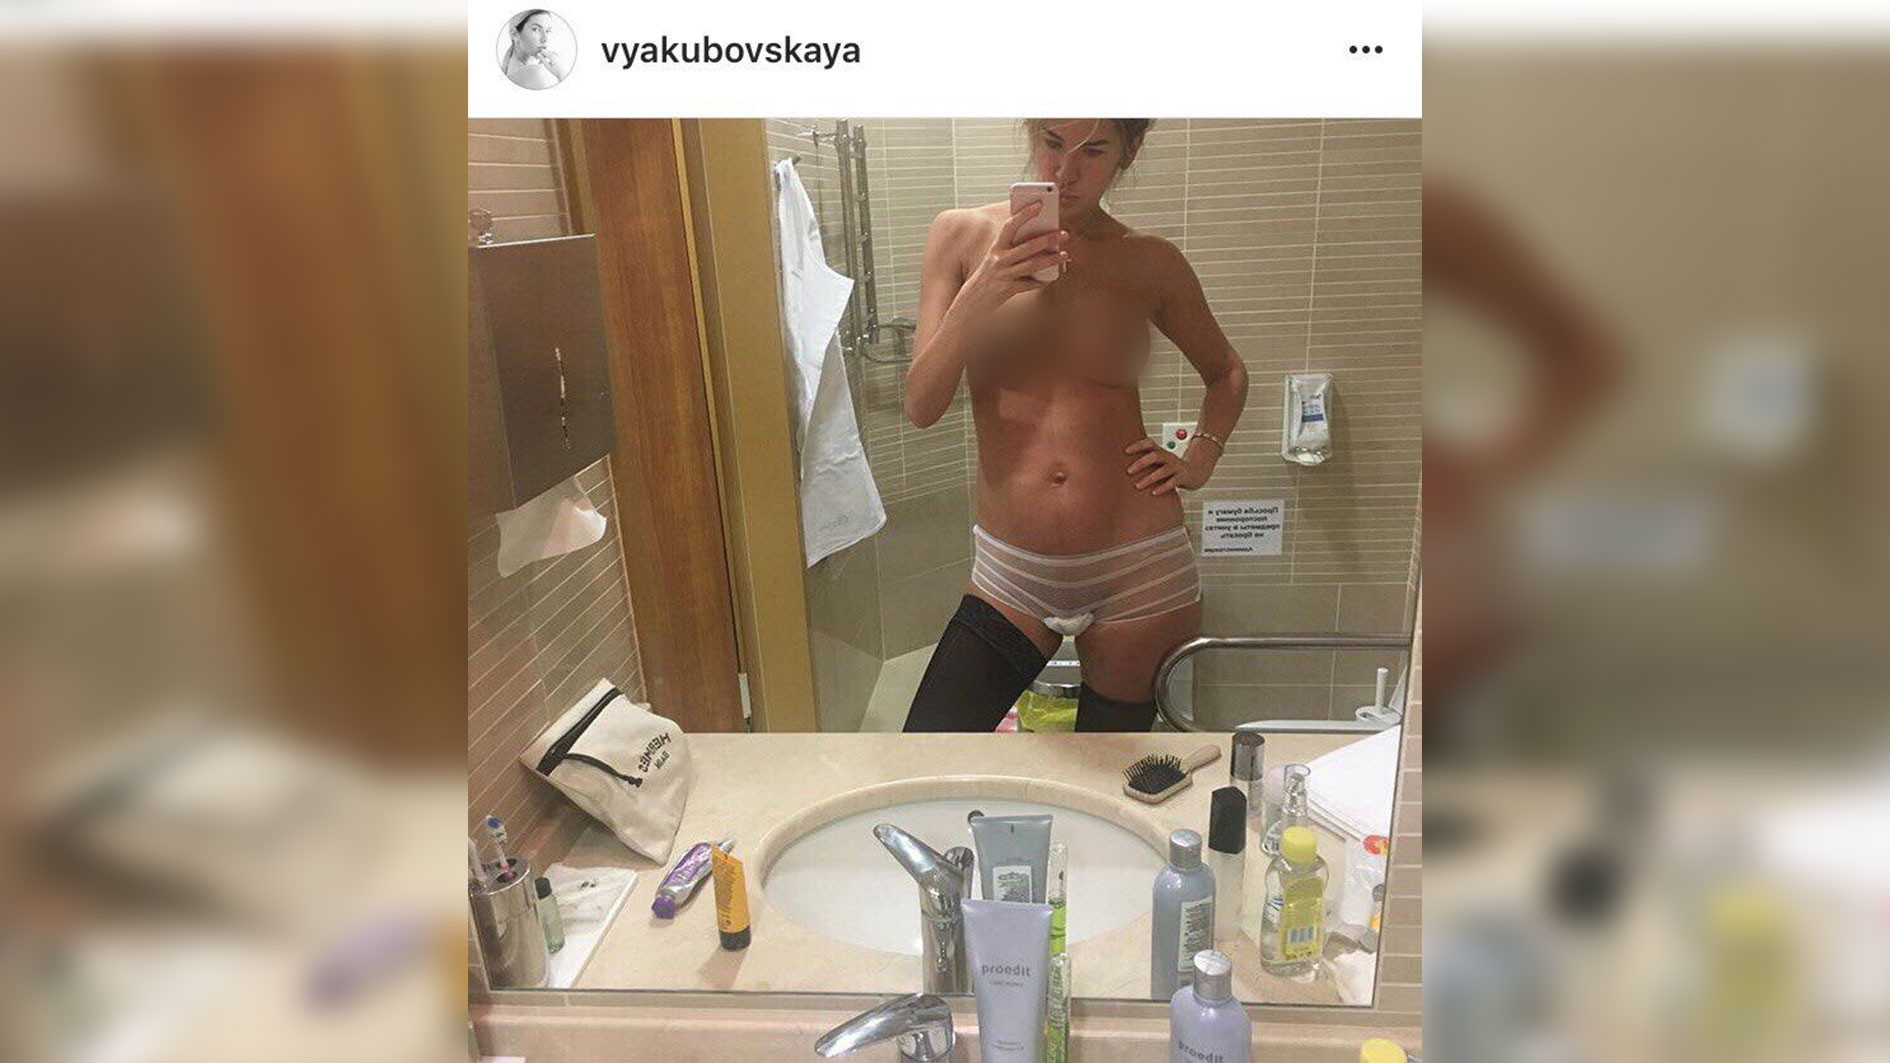 Дана Борисова порно фото. Скандальные фото голых знаменитостей